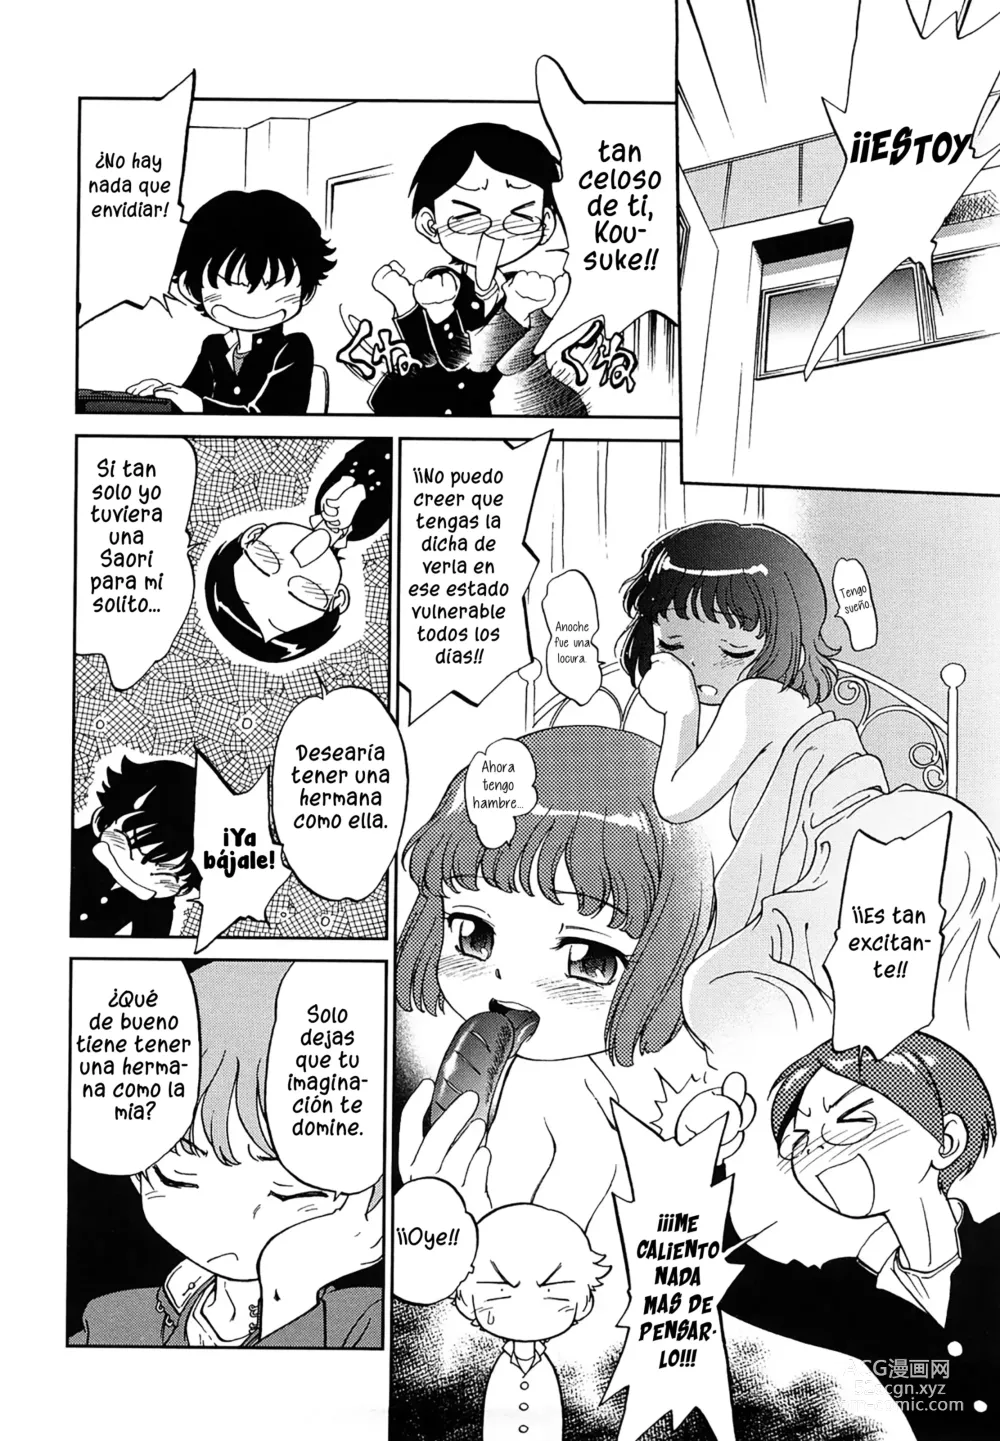 Page 4 of manga Lecciones confinadas de hermanos lascivos